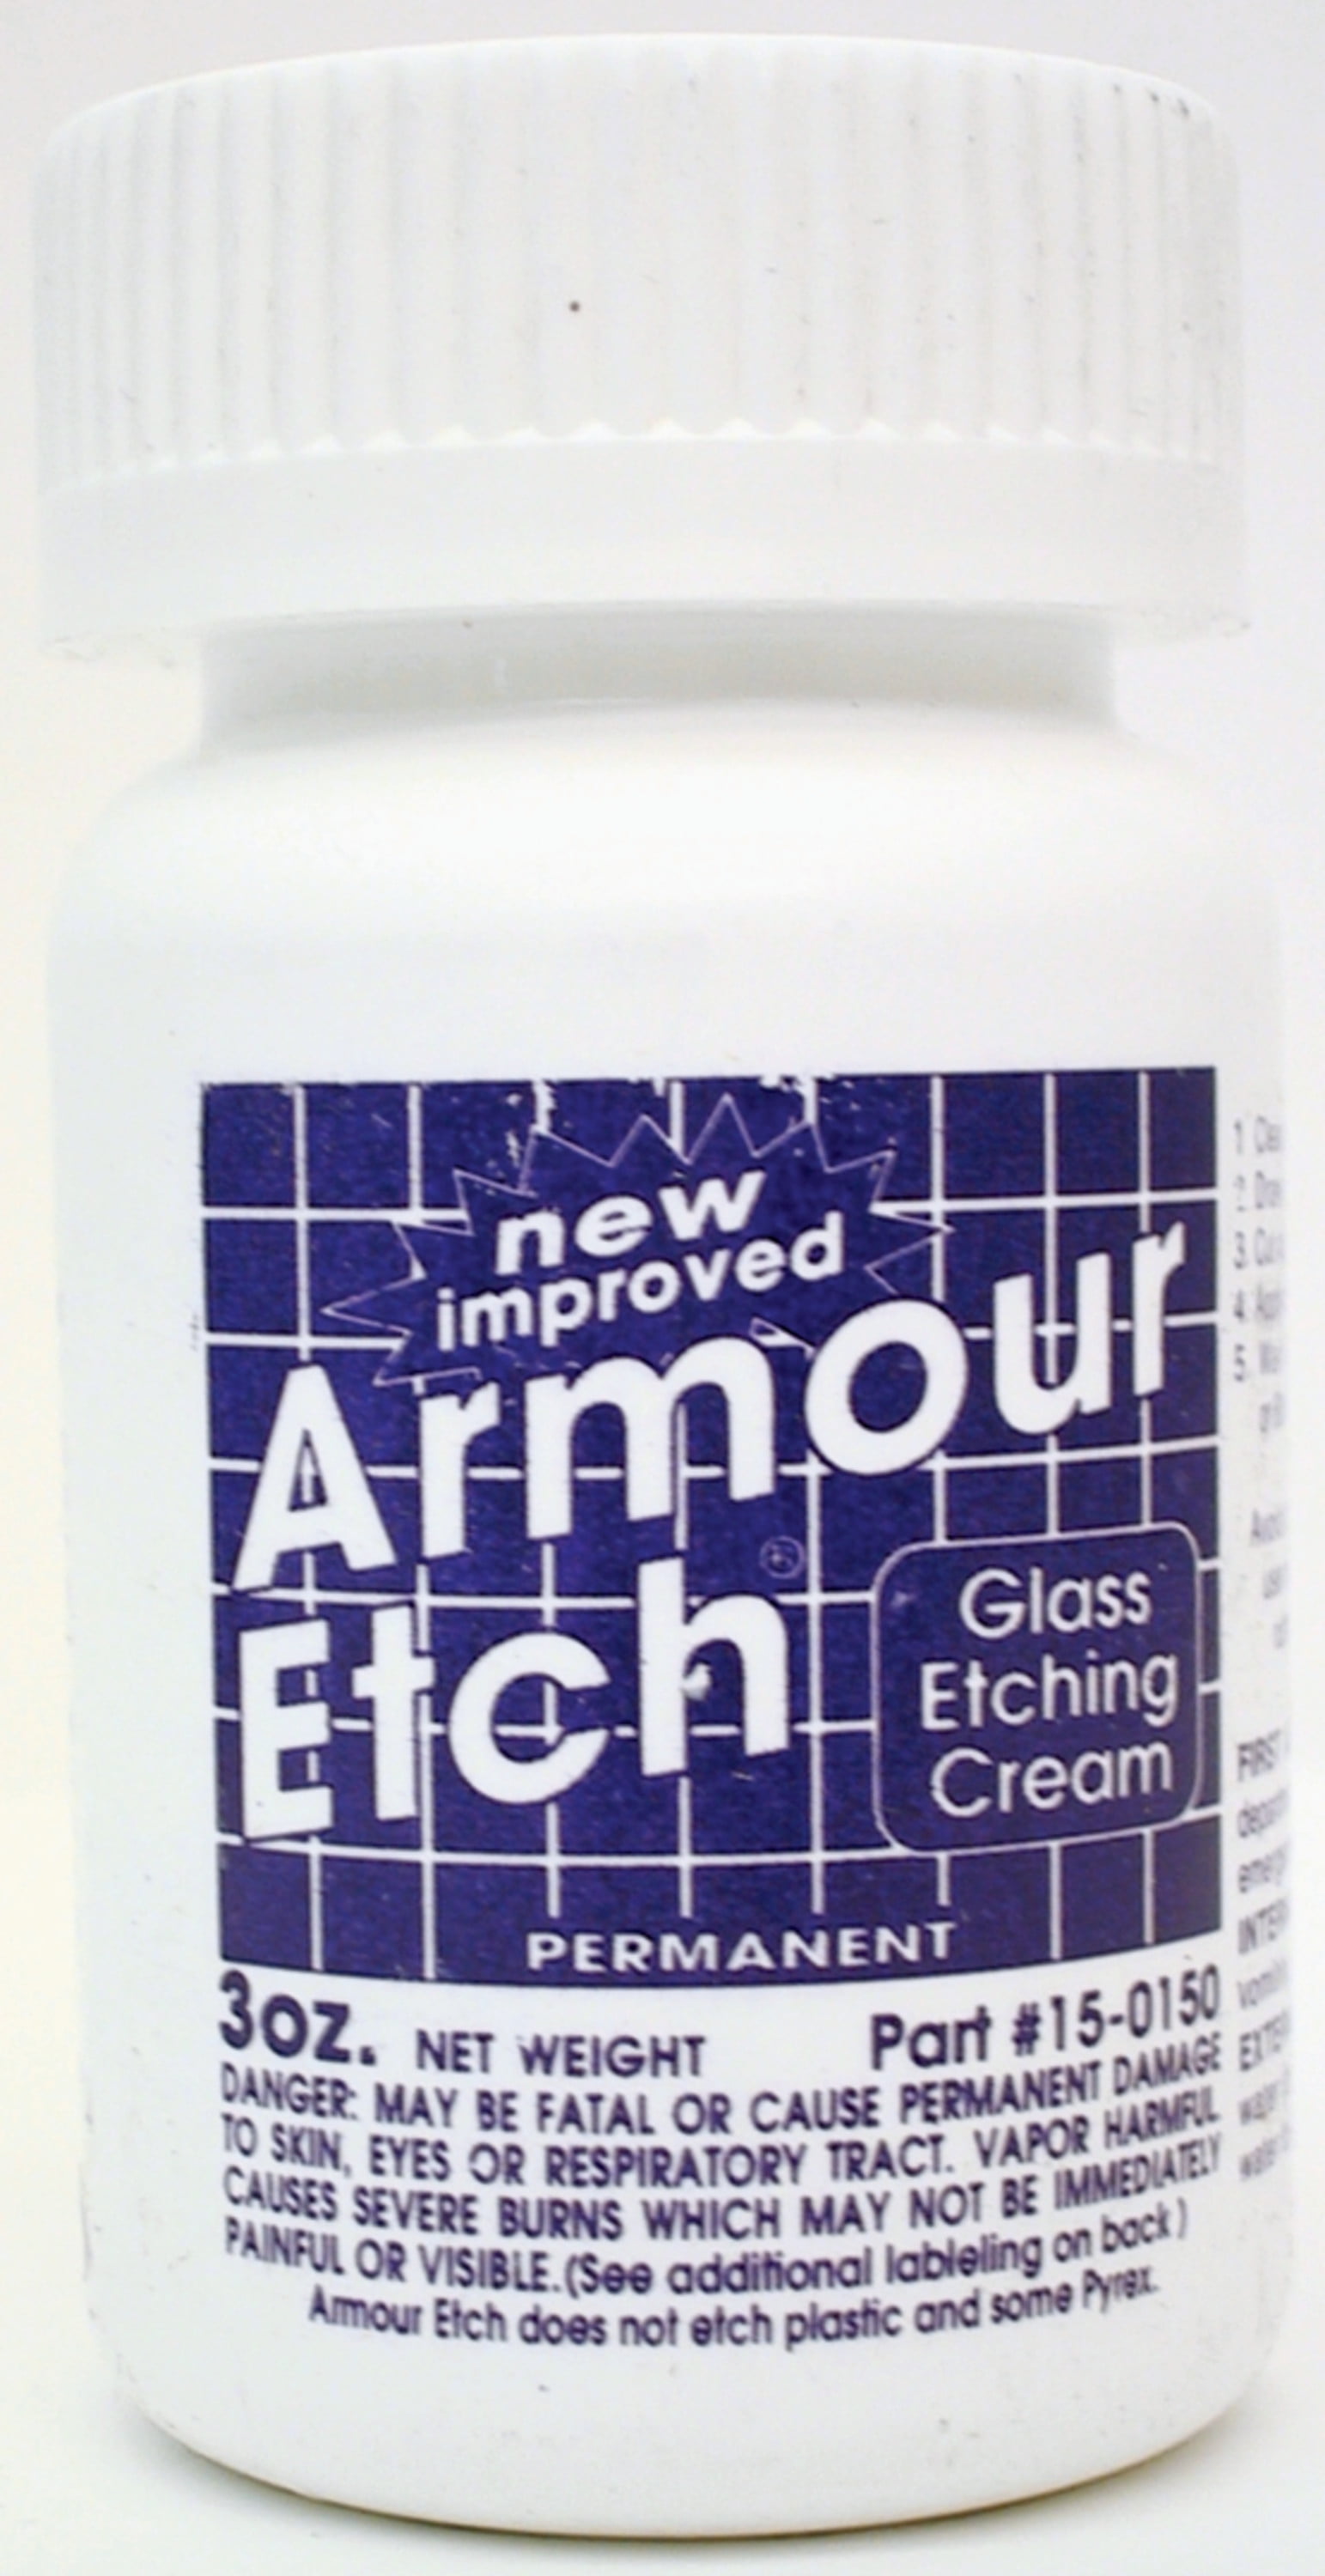 ARMOUR Glass Etching Cream 22 oz. - 9835642